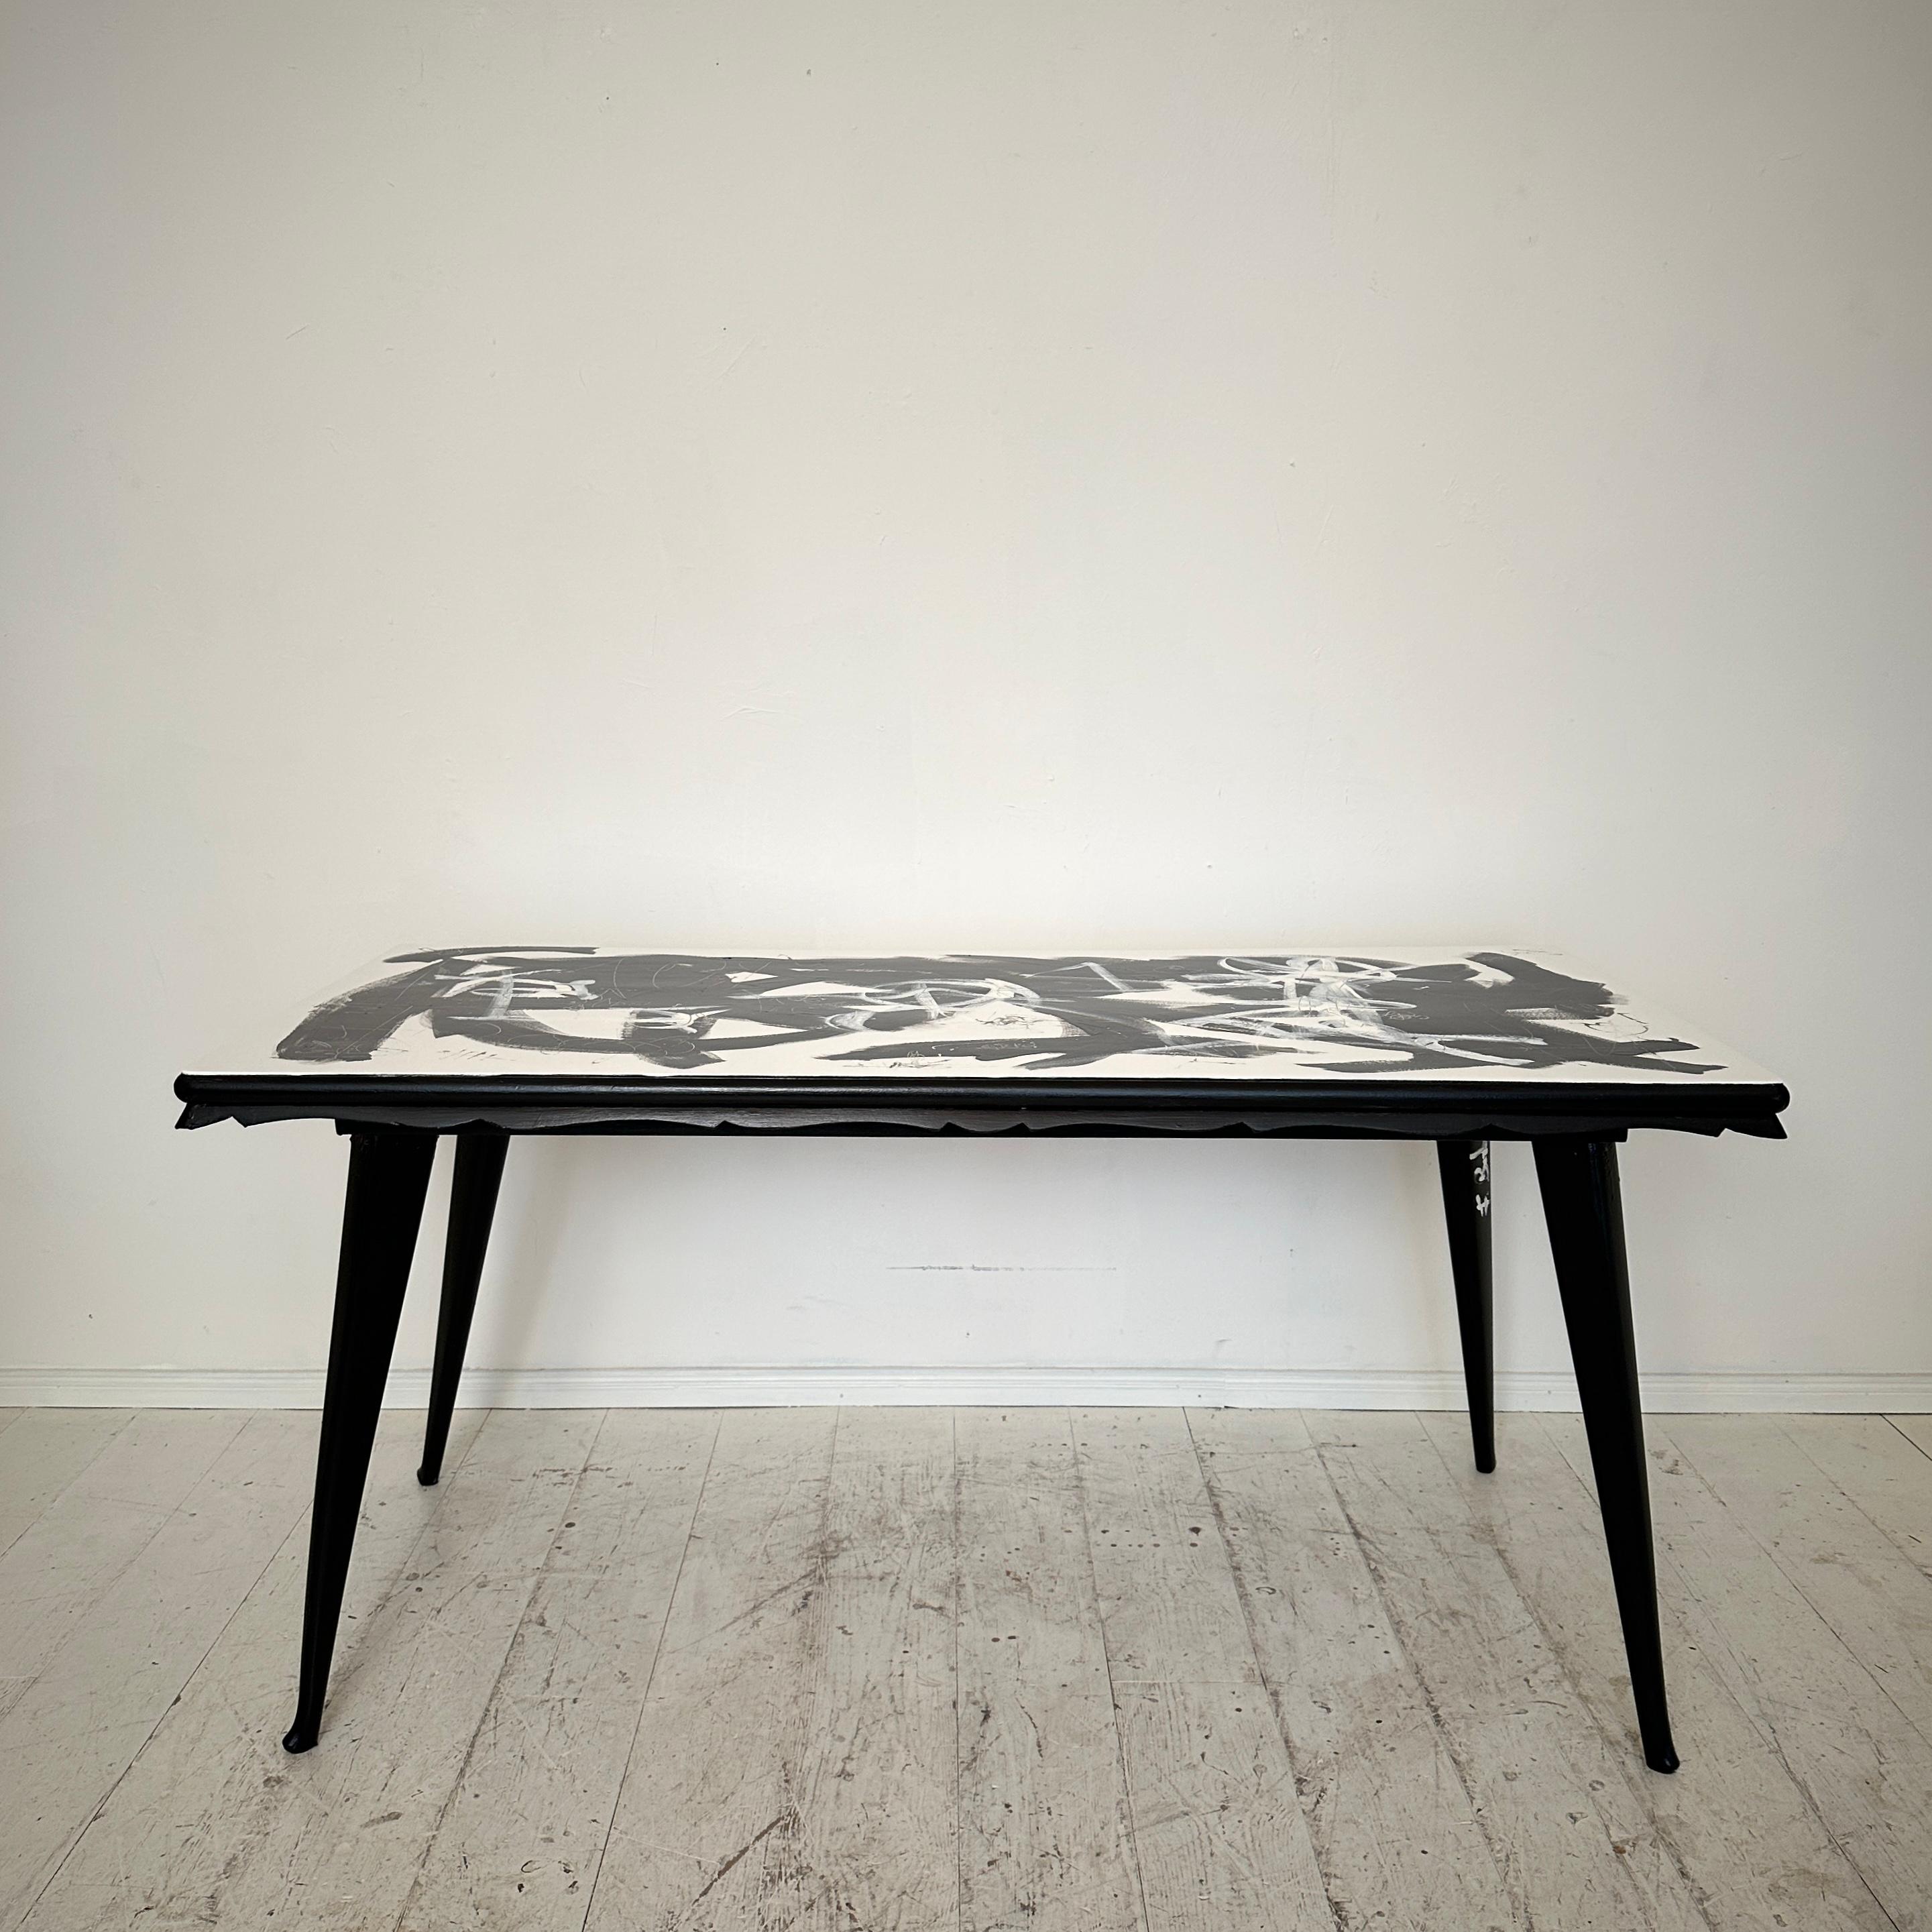 Erhöhen Sie Ihr Esserlebnis mit diesem auffälligen, abstrakt bemalten Esstisch mit einem Sockel aus den 1950er Jahren. Die Verbindung von schwarzen und weißen Farbtönen auf der Oberfläche schafft eine fesselnde visuelle Erzählung, die Modernität mit